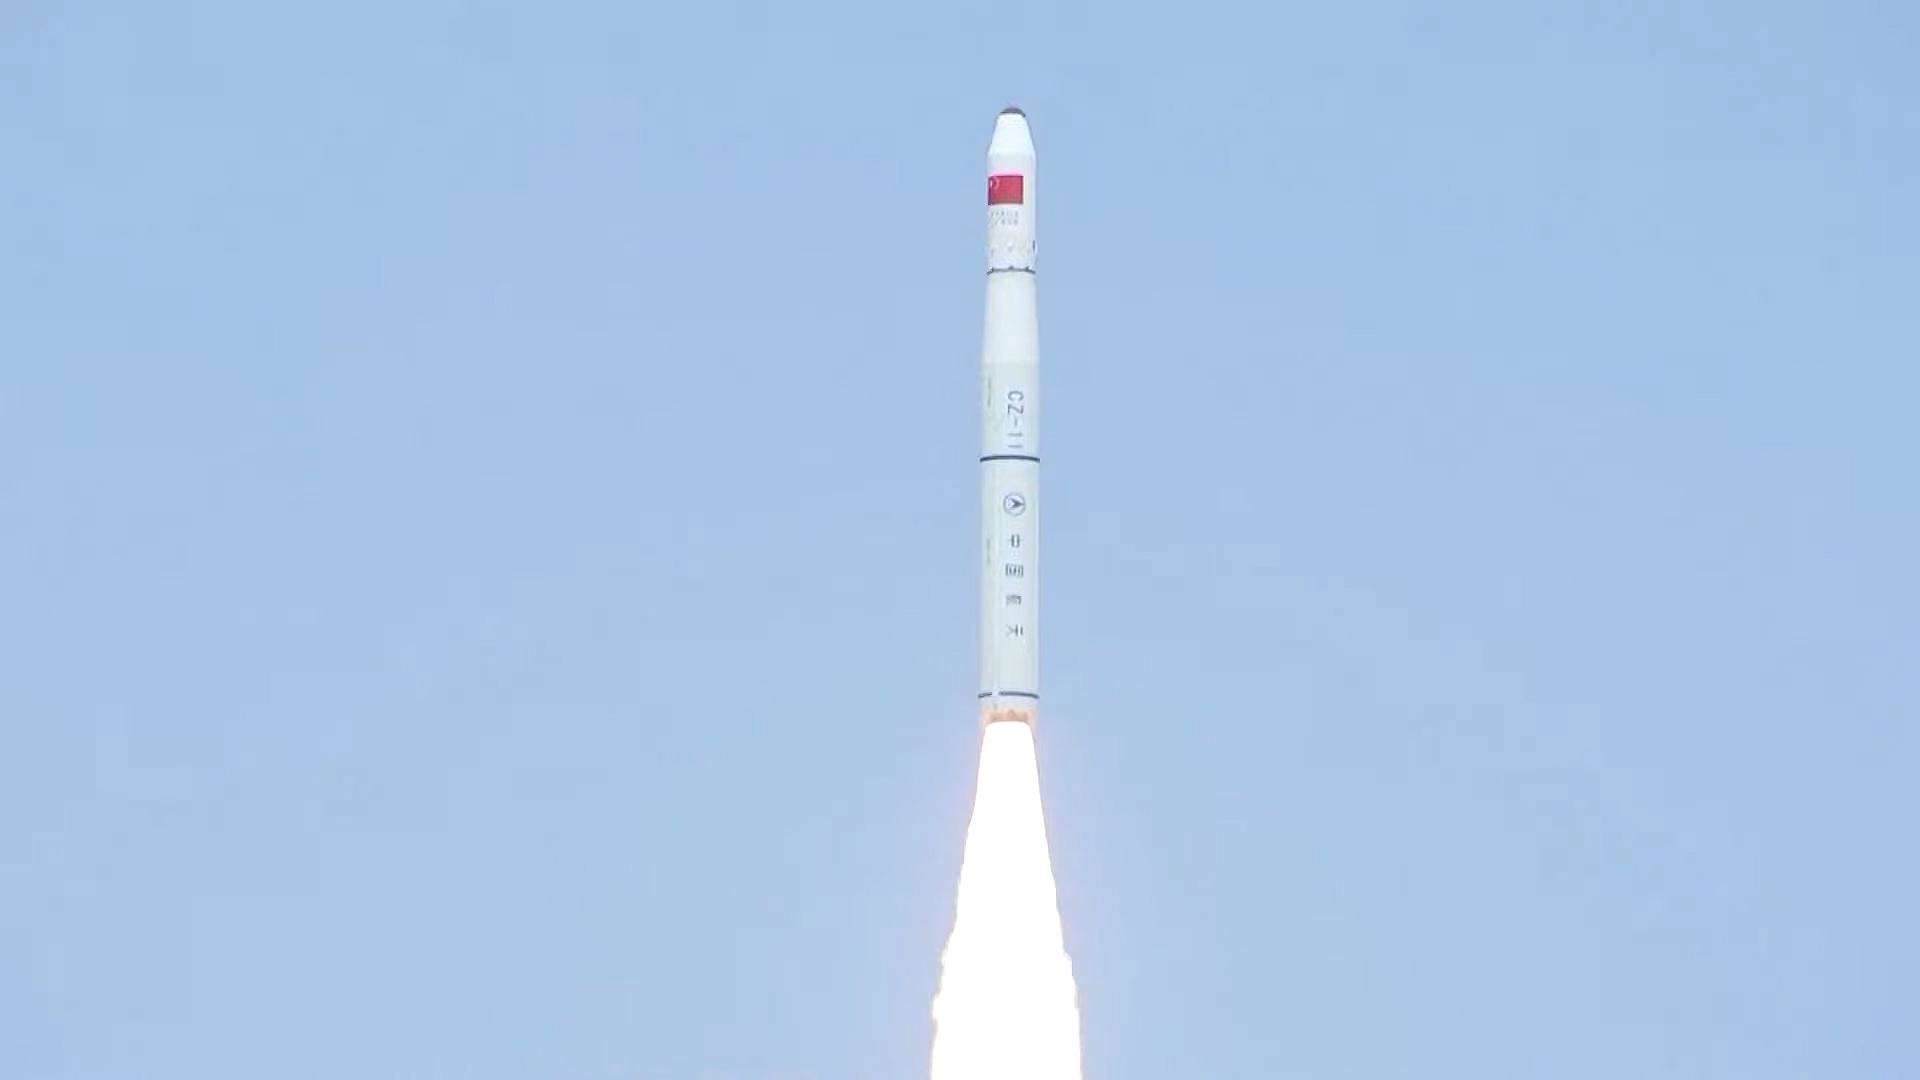 चीन ने 5 नए उपग्रह लॉन्च किए है। 